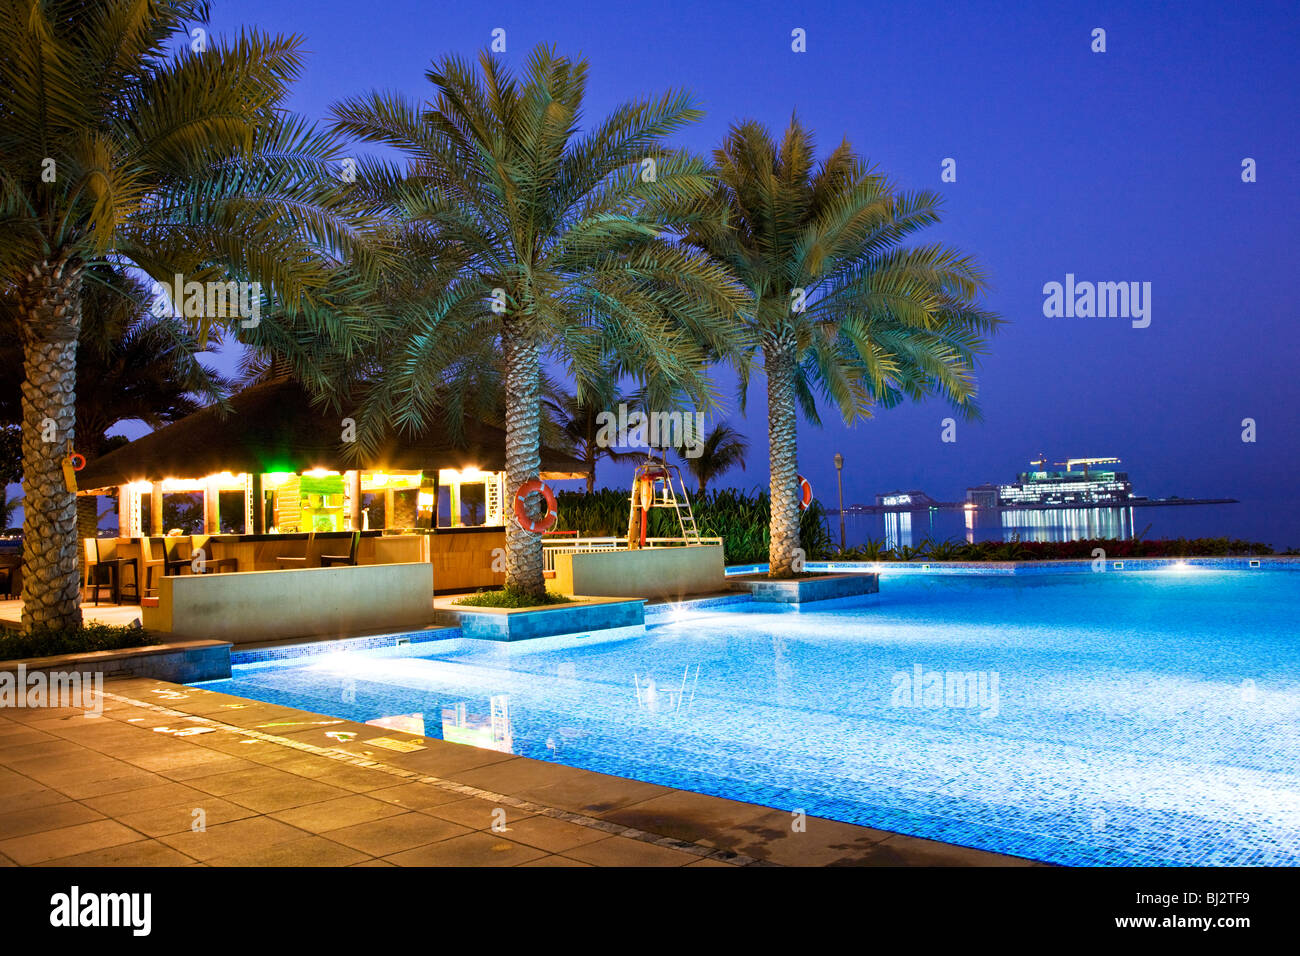 Der Pool in einem der Beachclubs auf die Palm Island Jumeirah in Dubai, Vereinigte Arabische Emirate, Vereinigte Arabische Emirate, in der Dämmerung Stockfoto